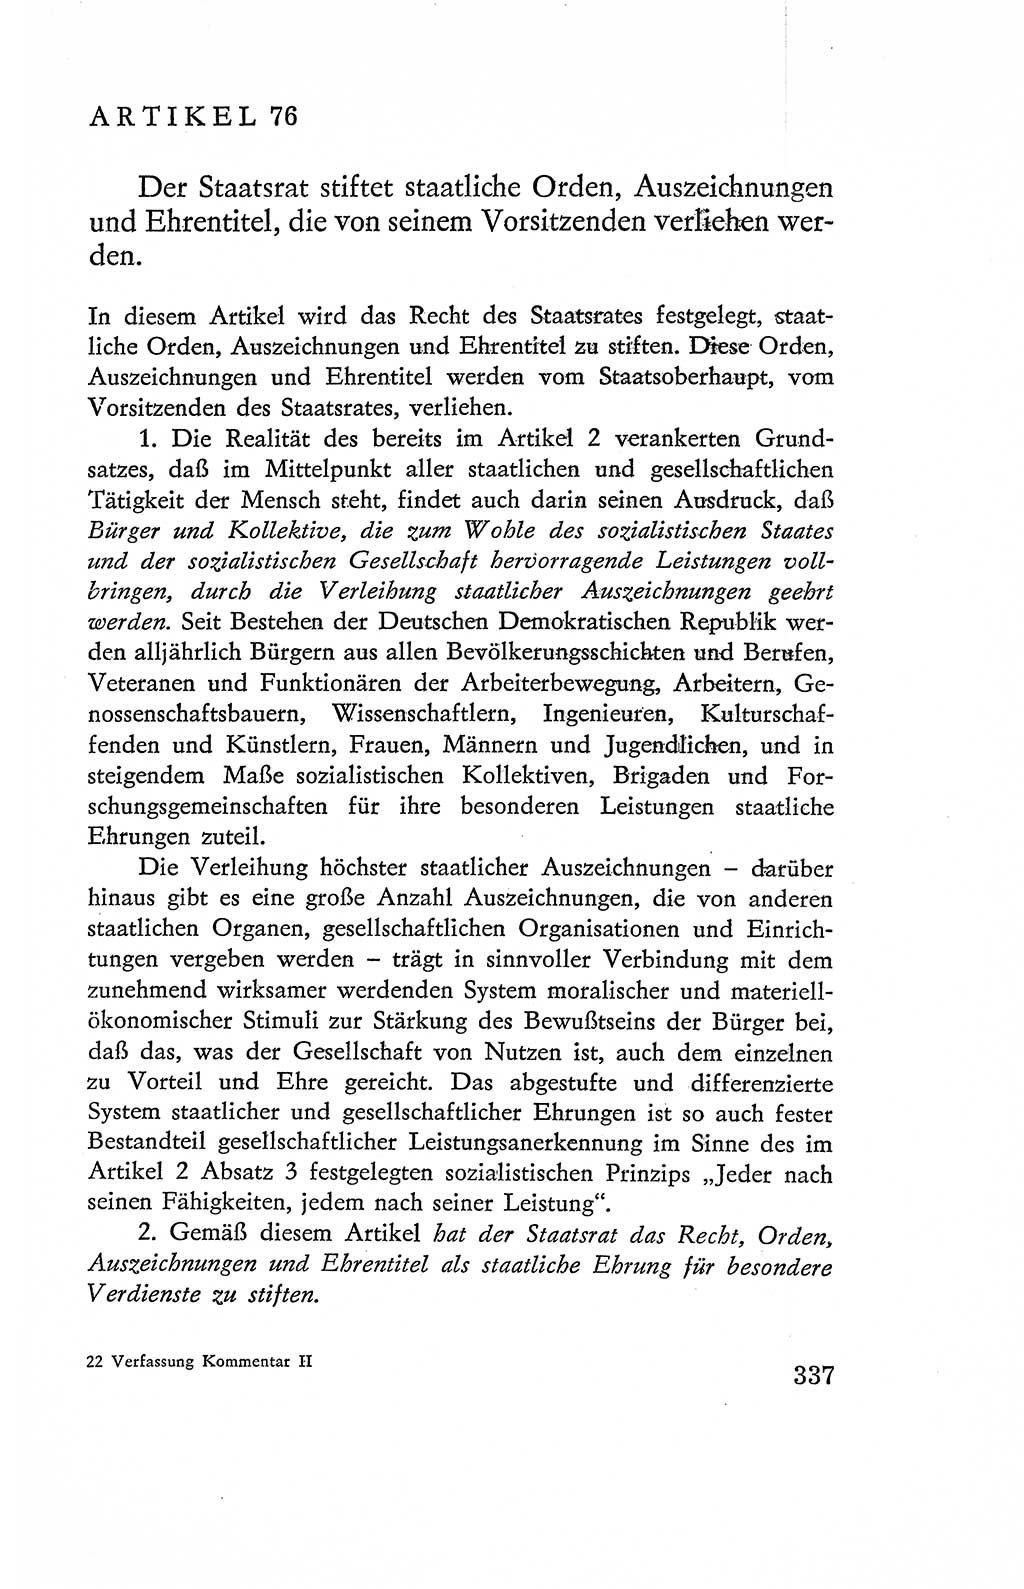 Verfassung der Deutschen Demokratischen Republik (DDR), Dokumente, Kommentar 1969, Band 2, Seite 337 (Verf. DDR Dok. Komm. 1969, Bd. 2, S. 337)